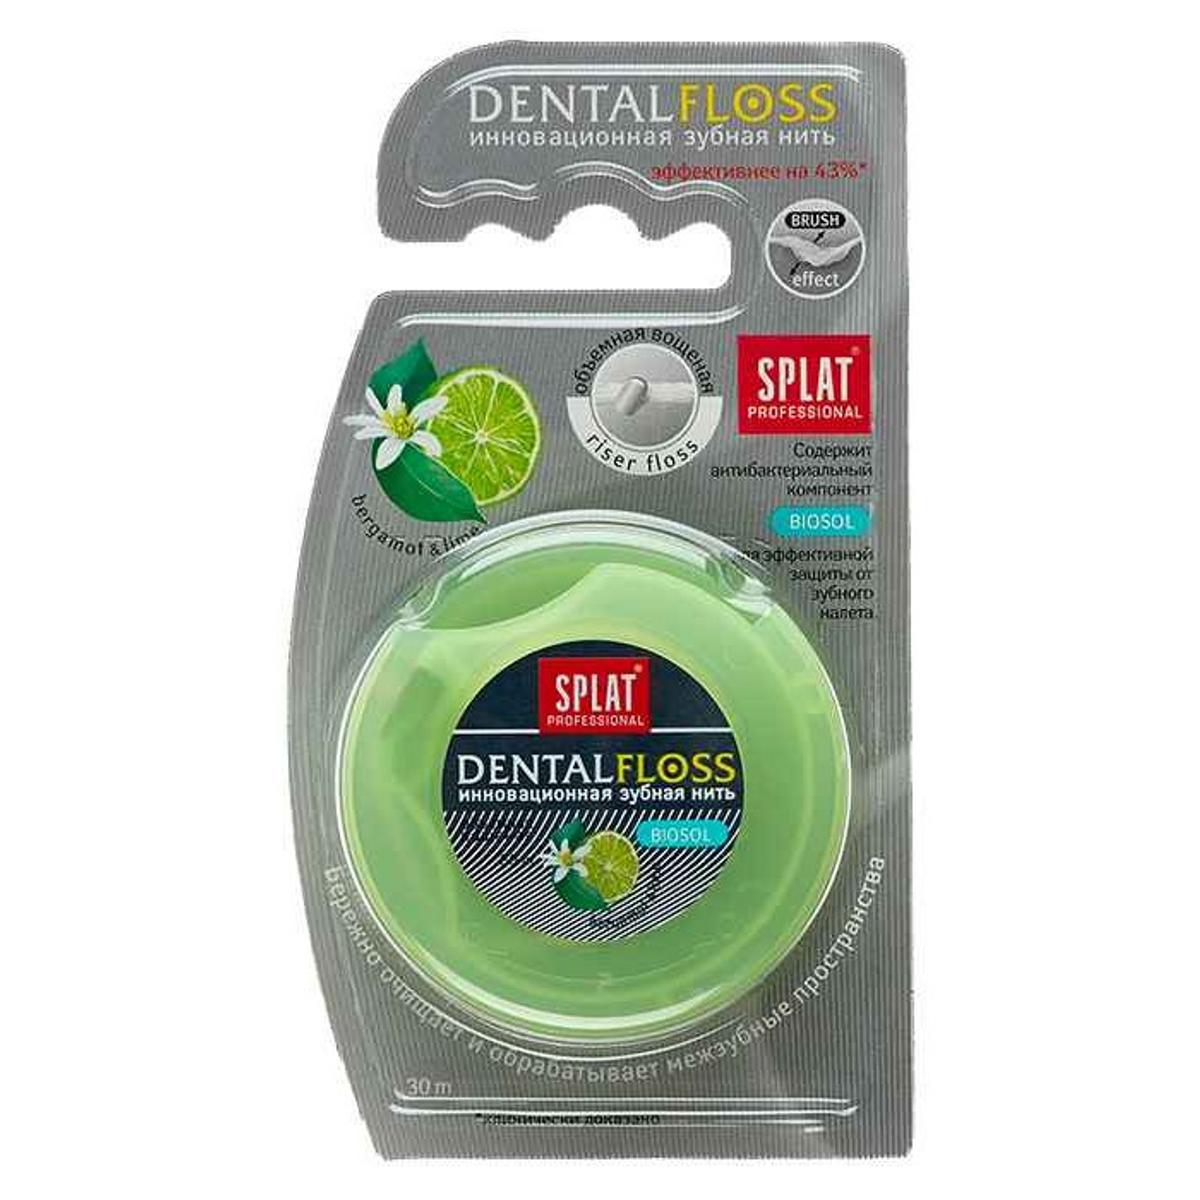 Splat Зубная нить Dental Floss с ароматом бергамота и лайма 30м